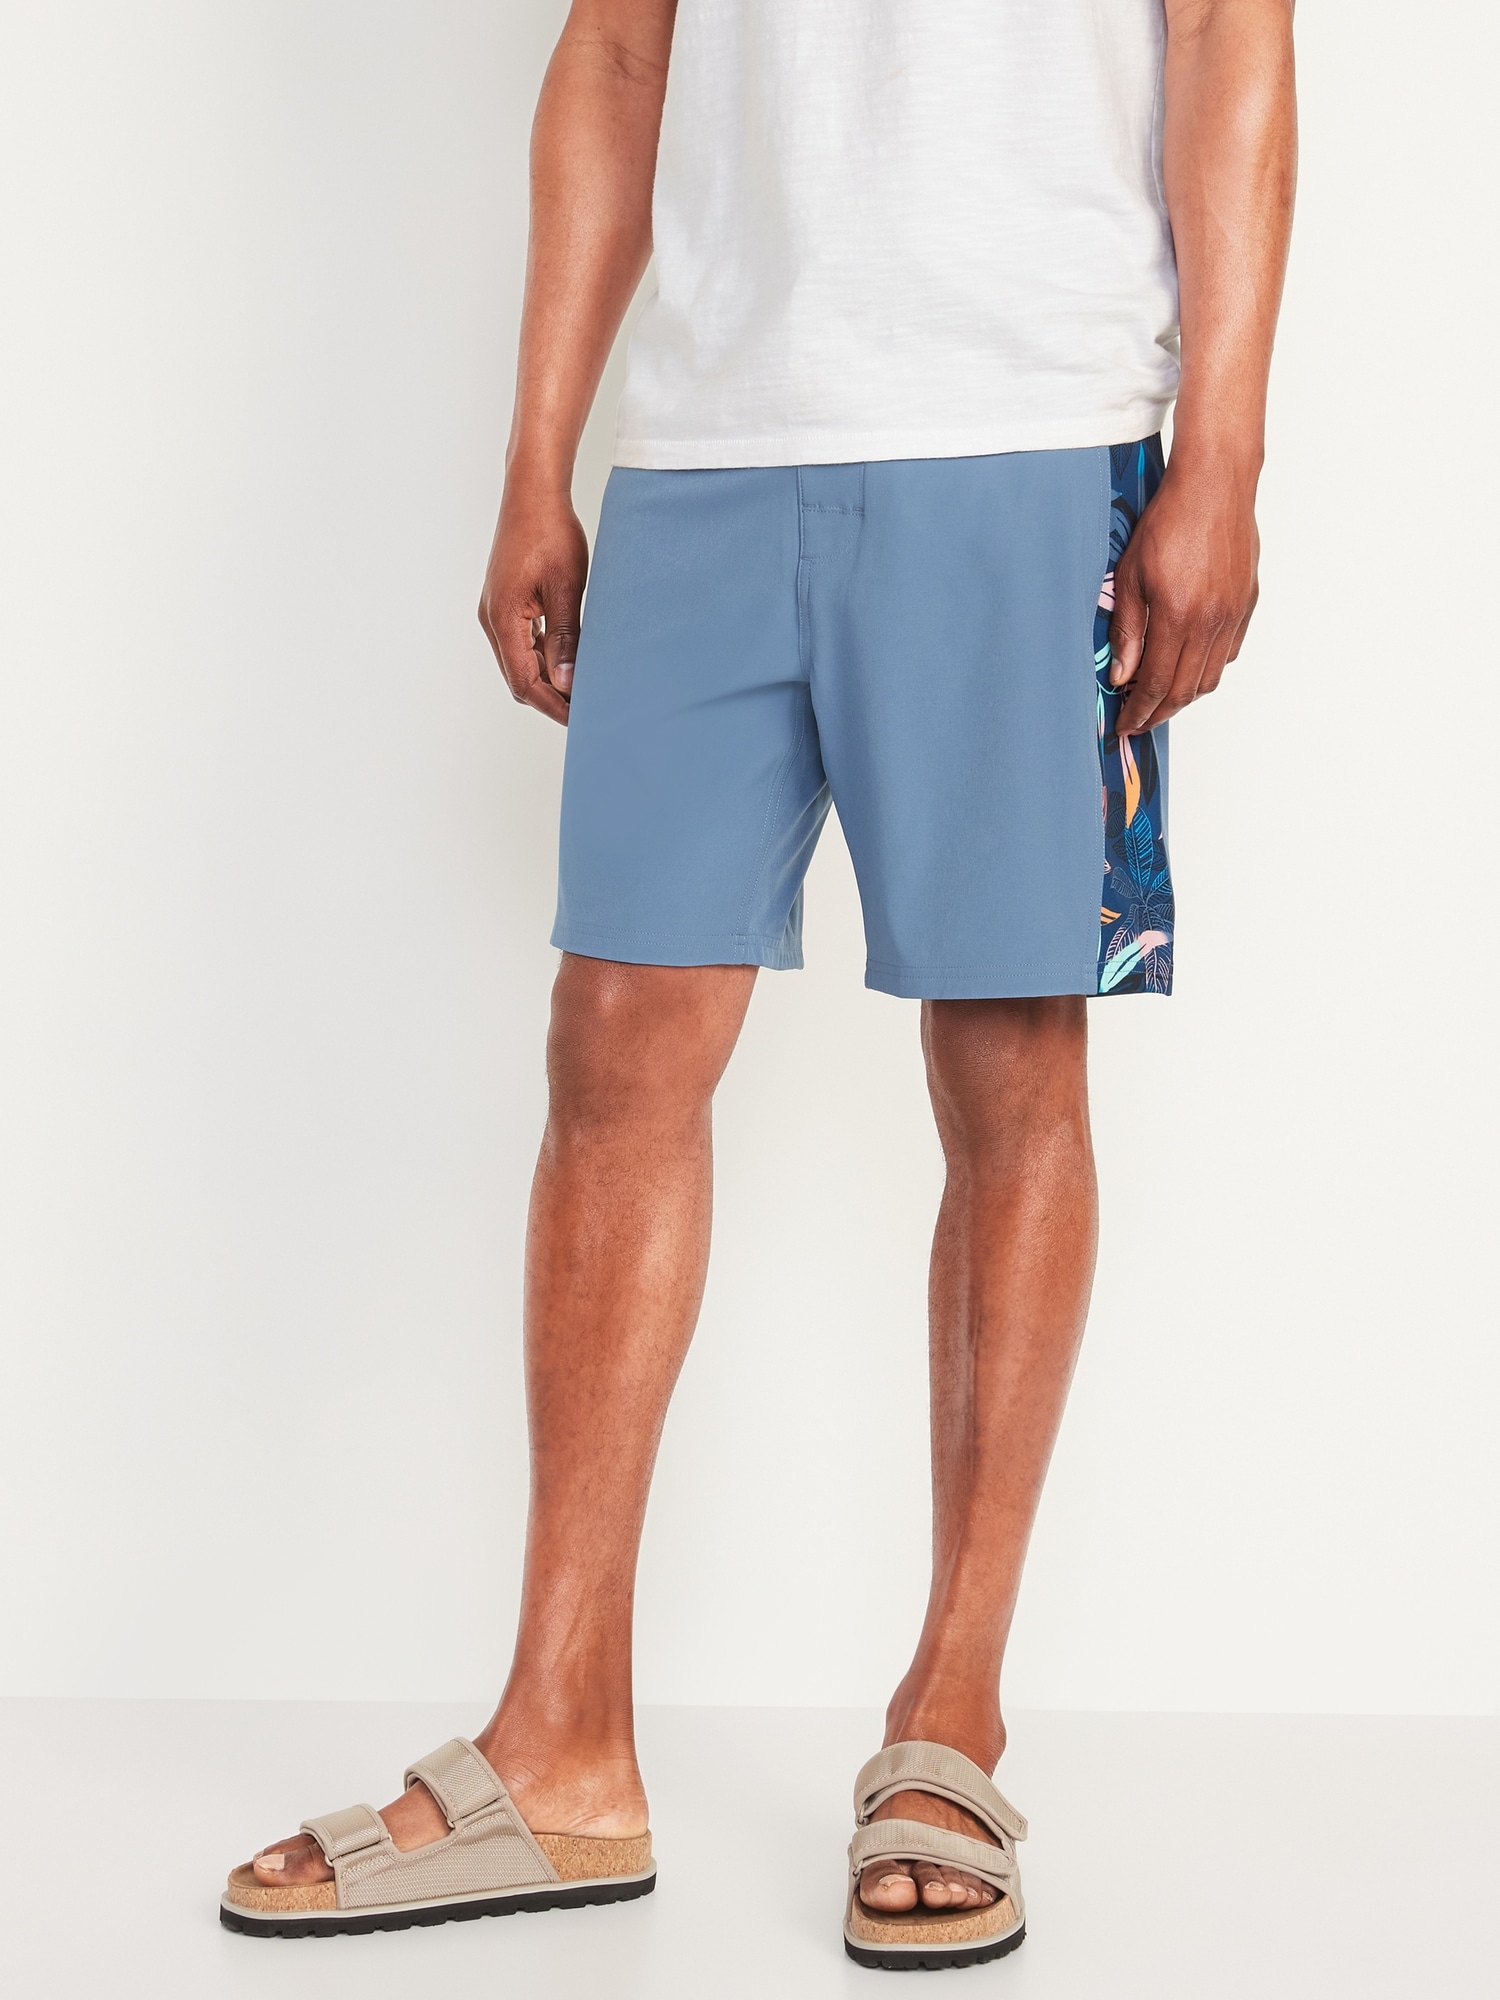 Built-In Flex Side-Stripe Board Shorts for Men - 8-inch inseam